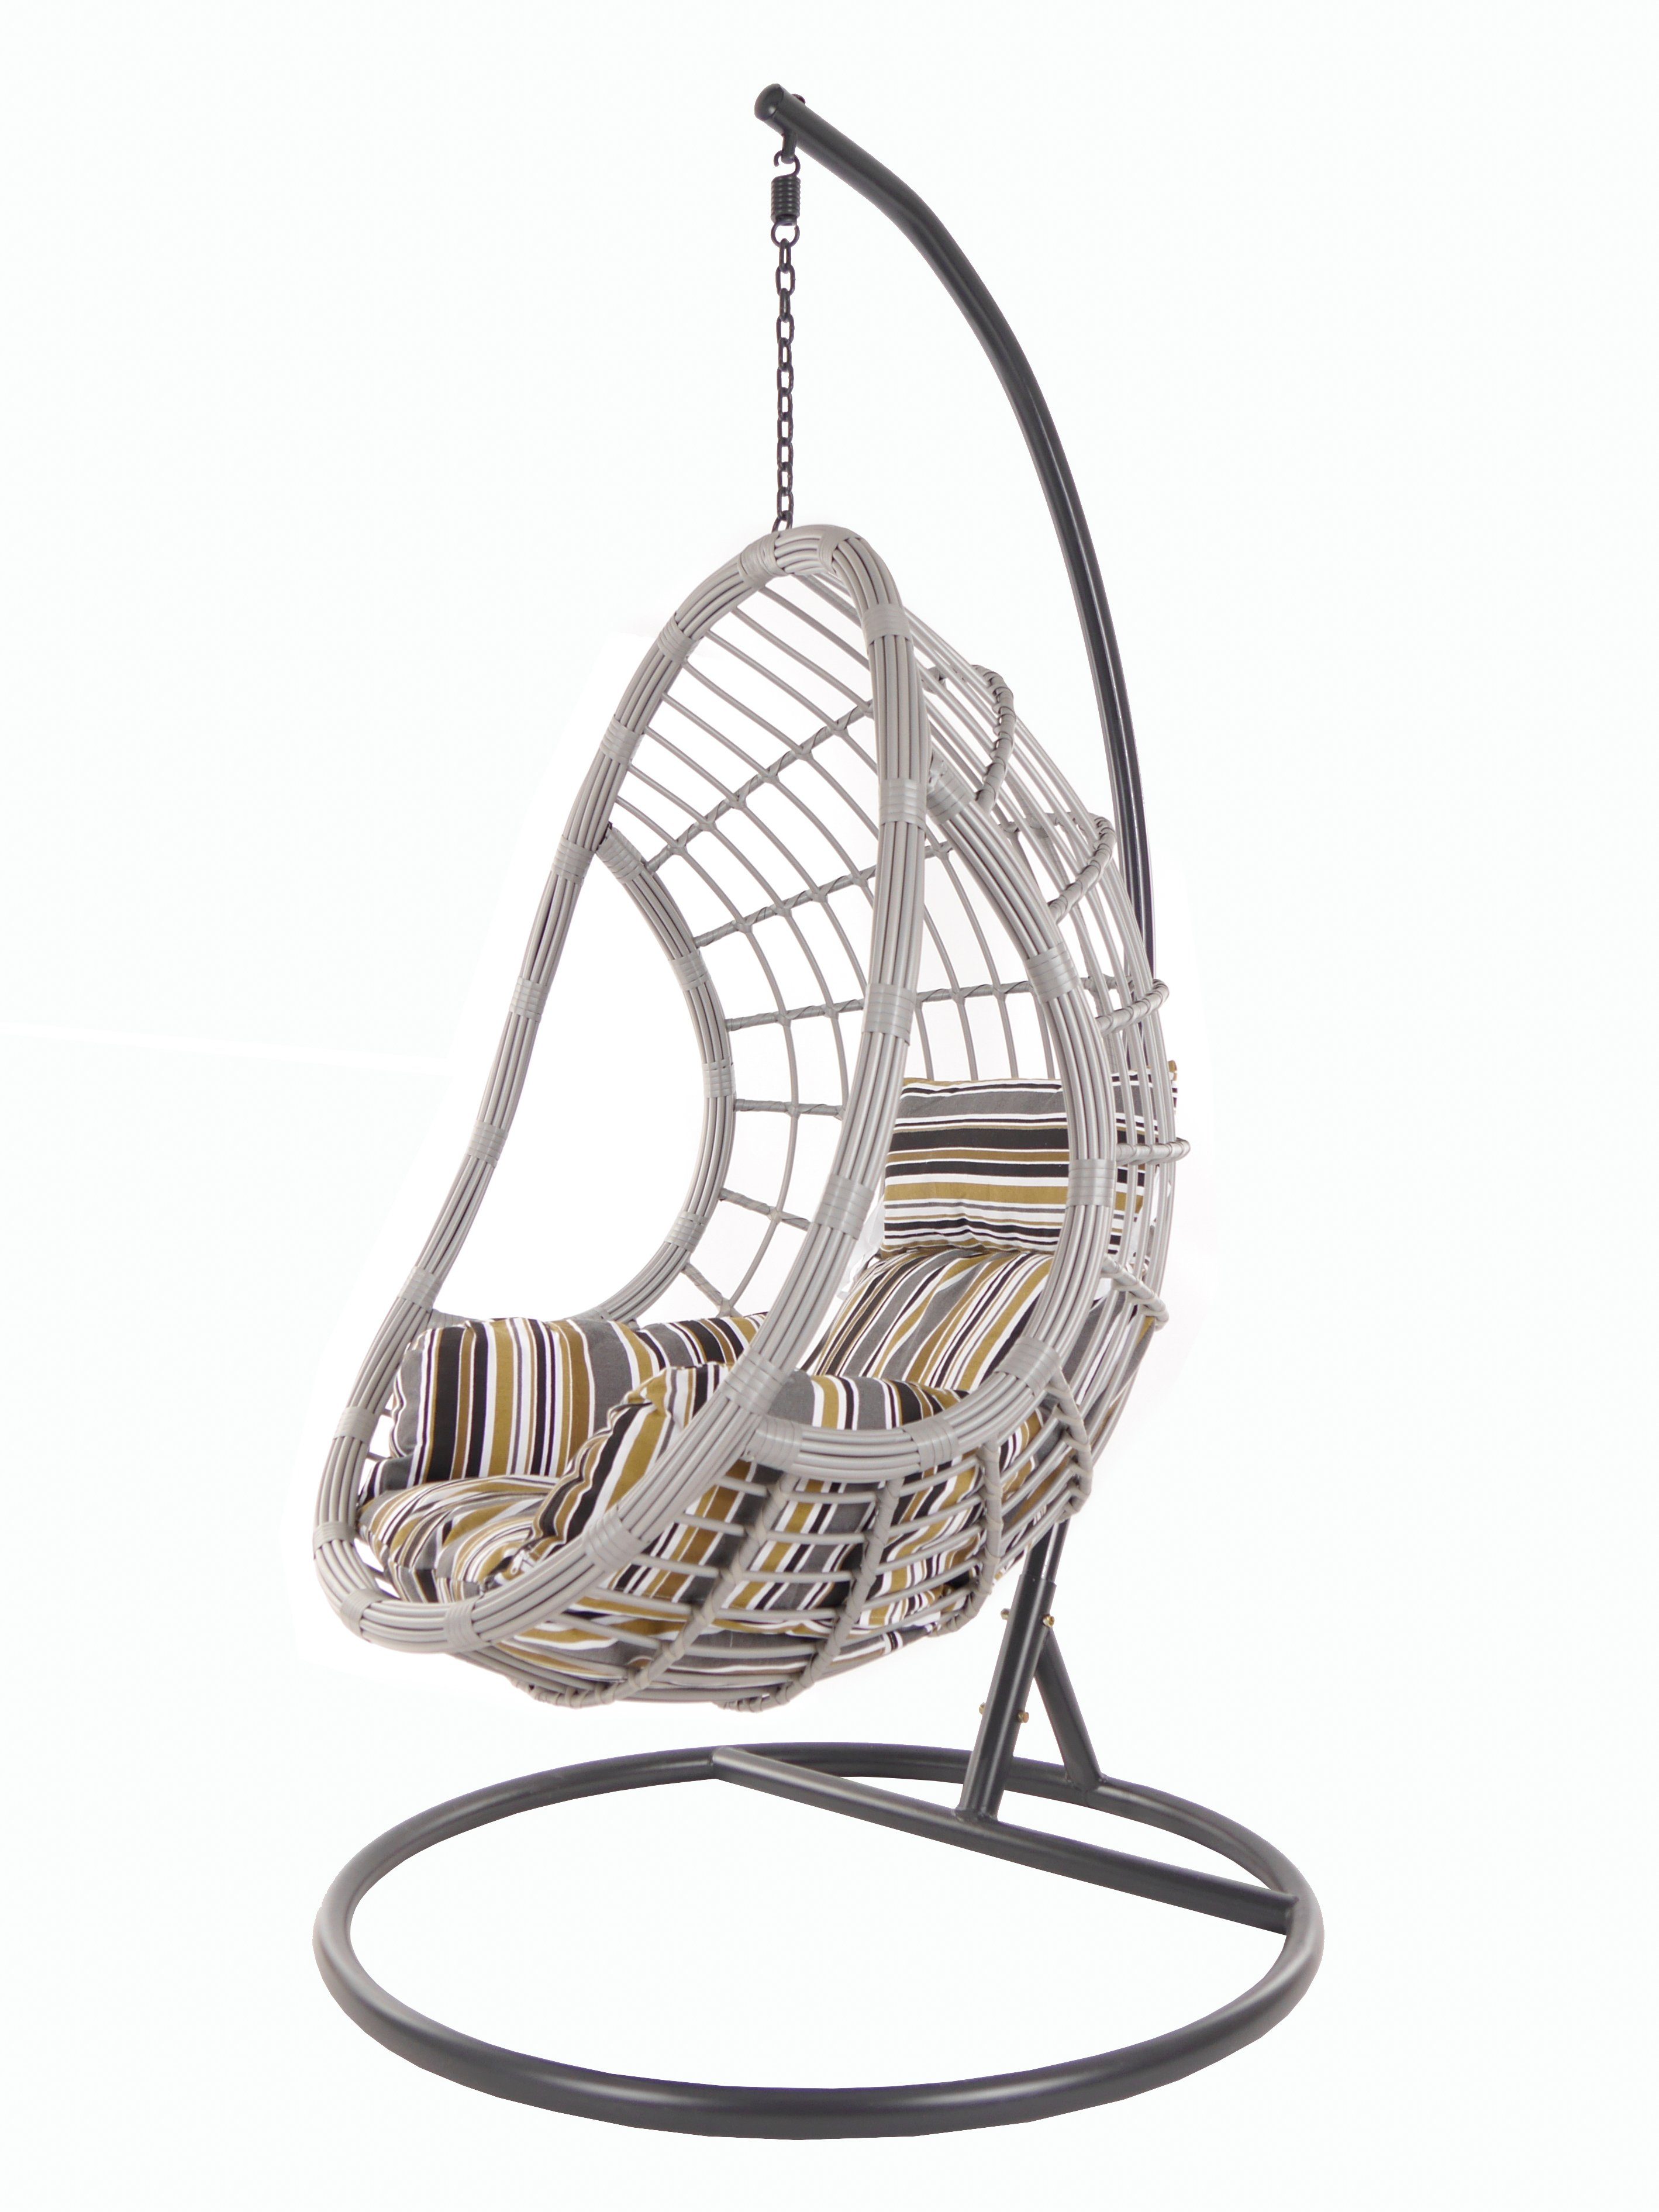 KIDEO Hängesessel PALMANOVA lightgrey, Swing Chair, Loungemöbel, Hängesessel mit Gestell und Kissen gestreift natur (7891 terra)